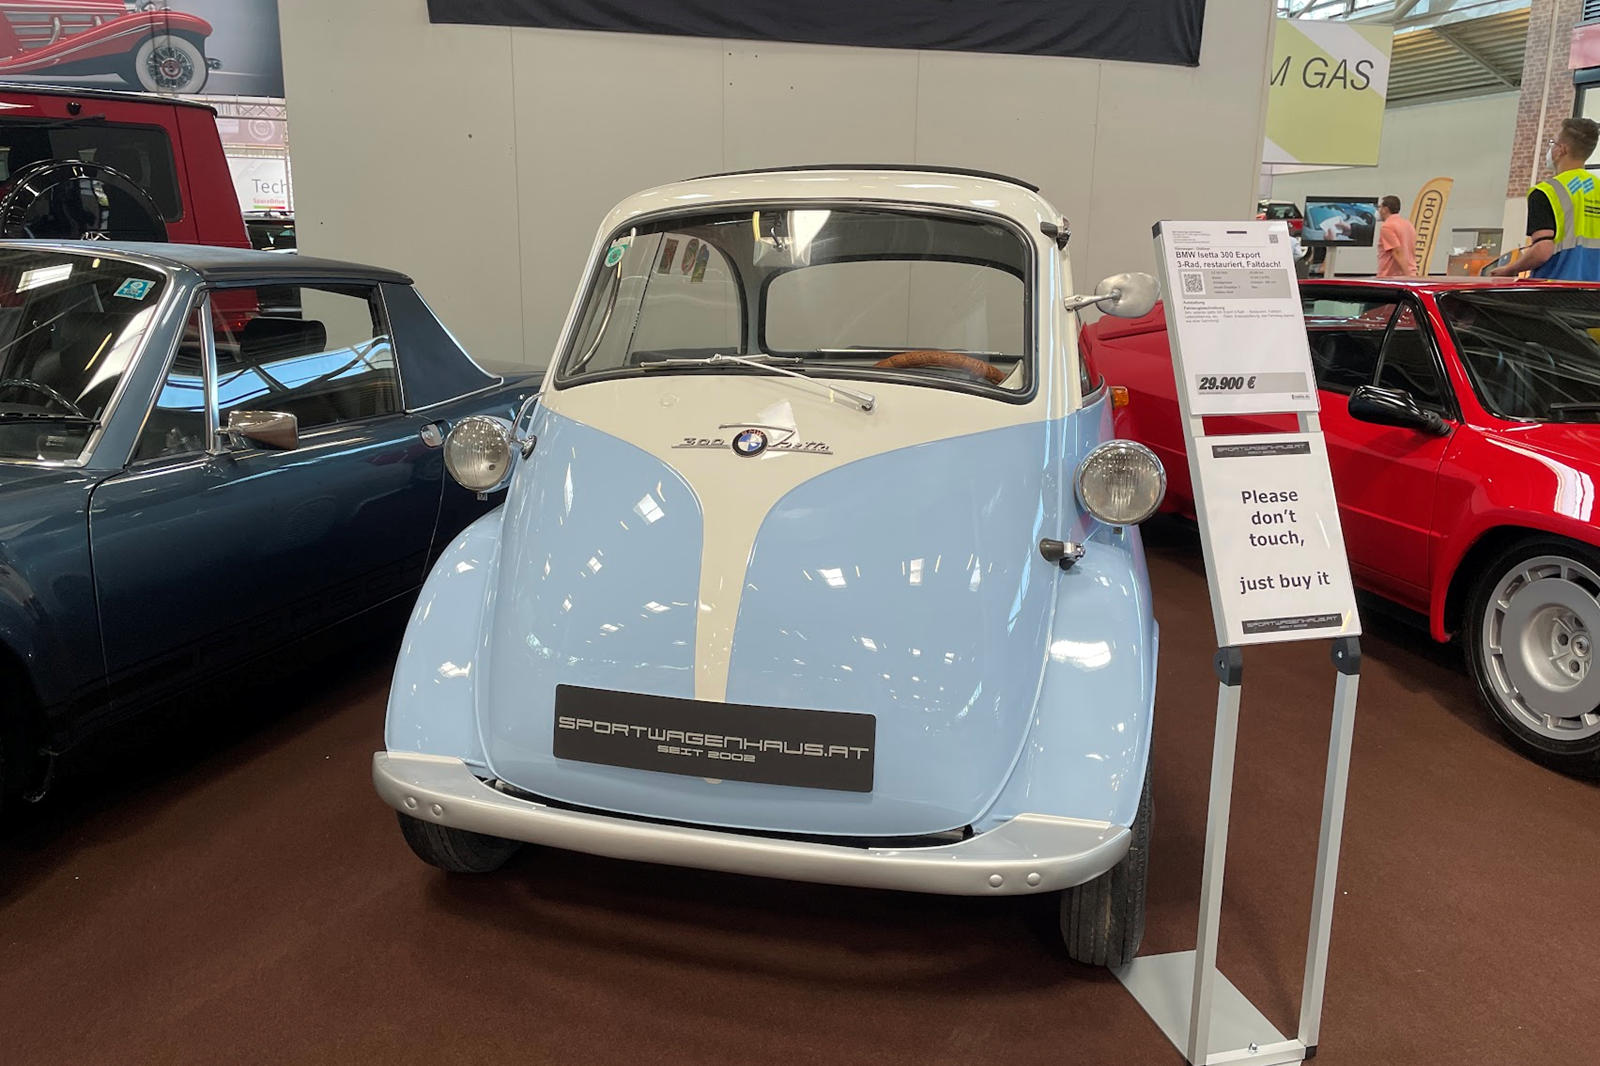 Thiết kế Microlino lây cảm hứng từ mẫu Isetta của BMW